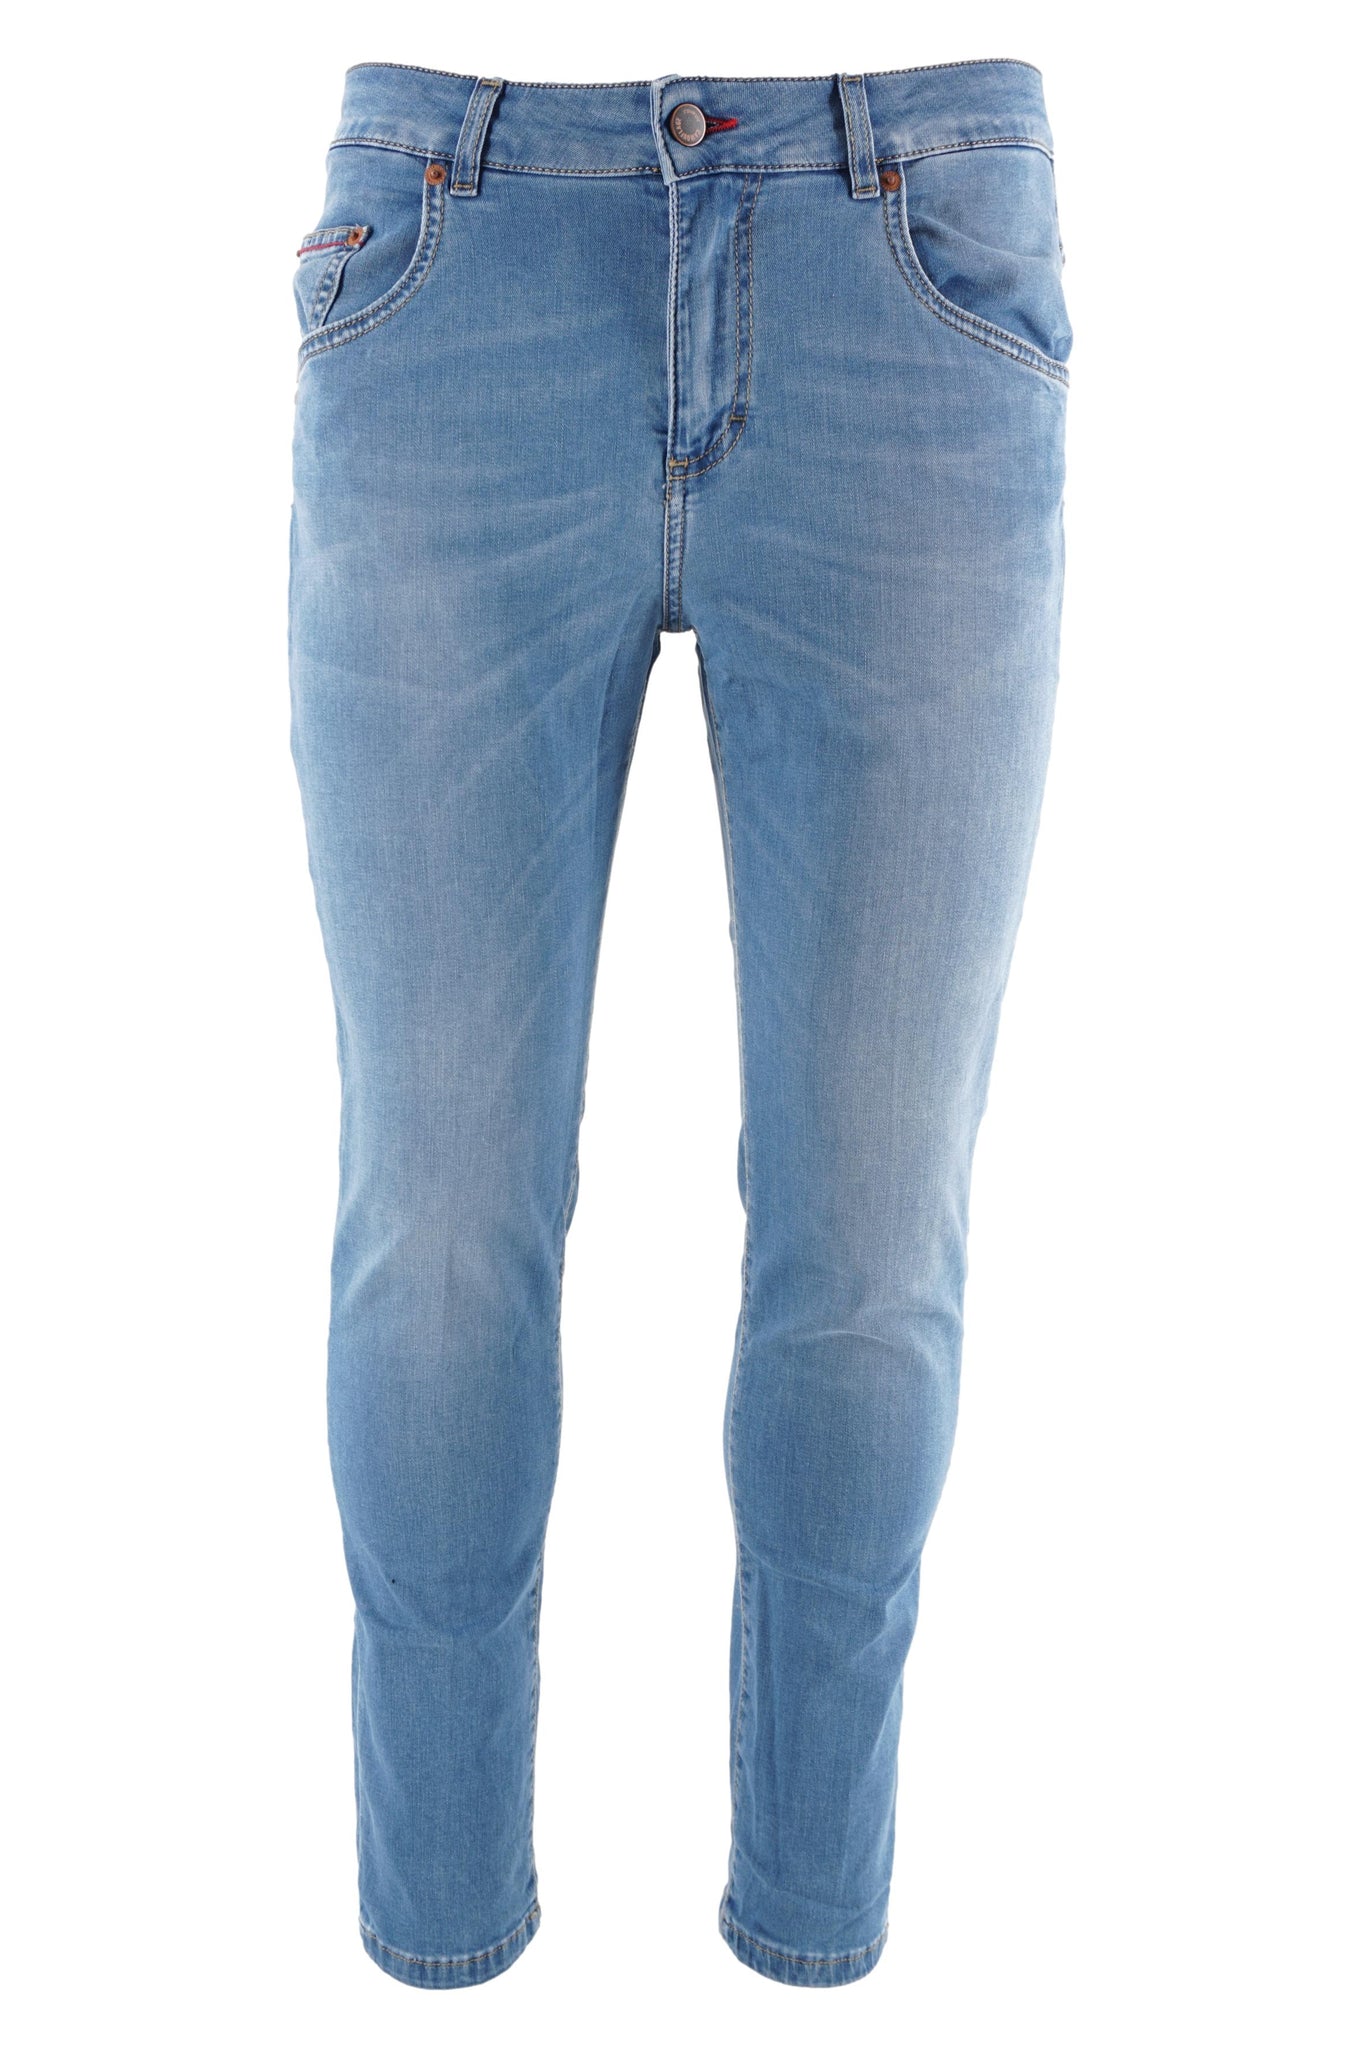 Denim Modello Rocco Slim Fit / Jeans - Ideal Moda